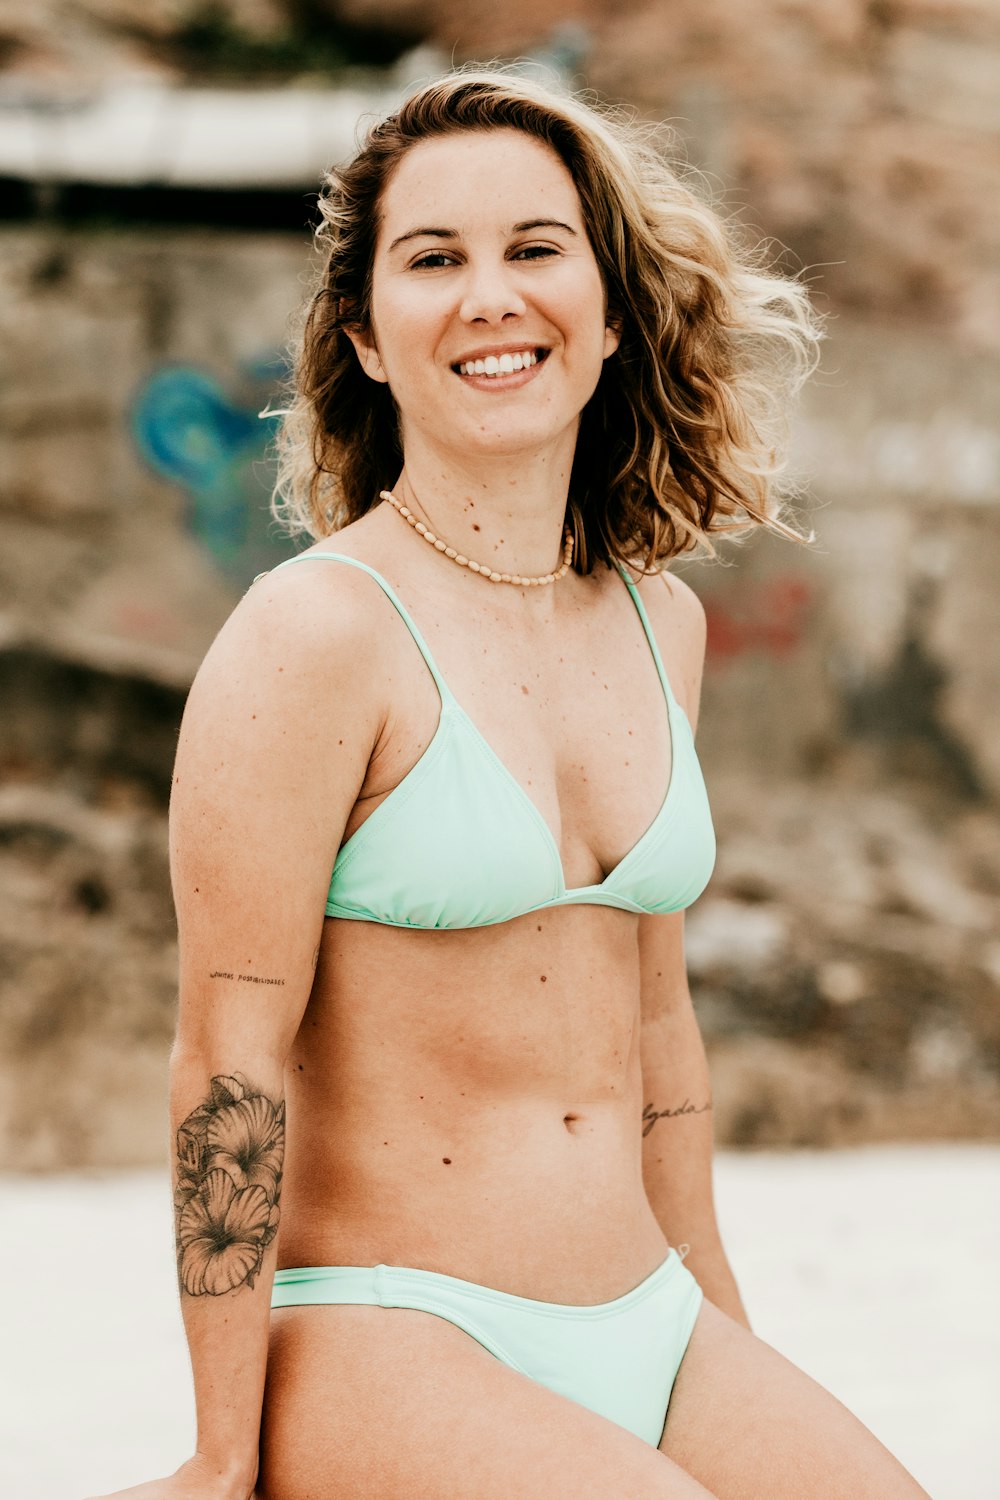 woman in green bikini top smiling